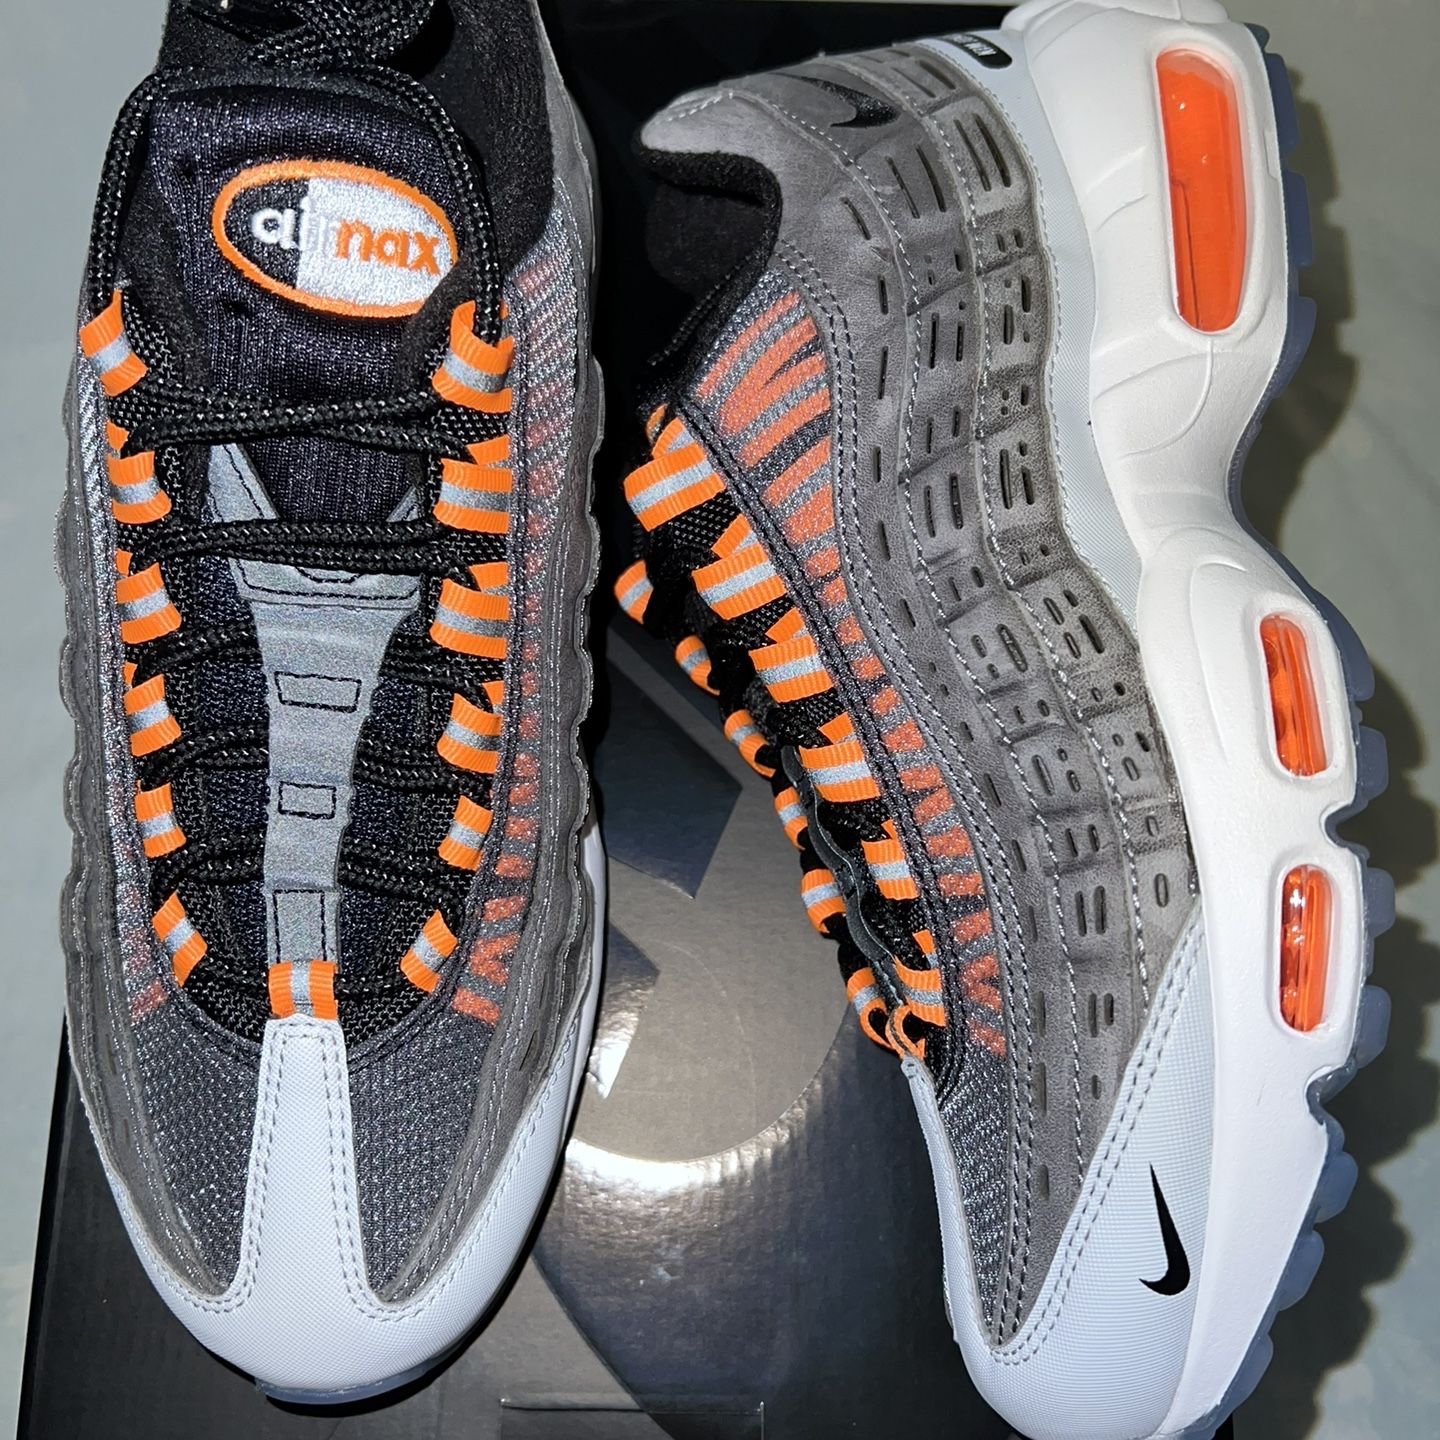 Nike Air Max 95 Kim Jones Black Total OrangeNike Air Max 95 Kim